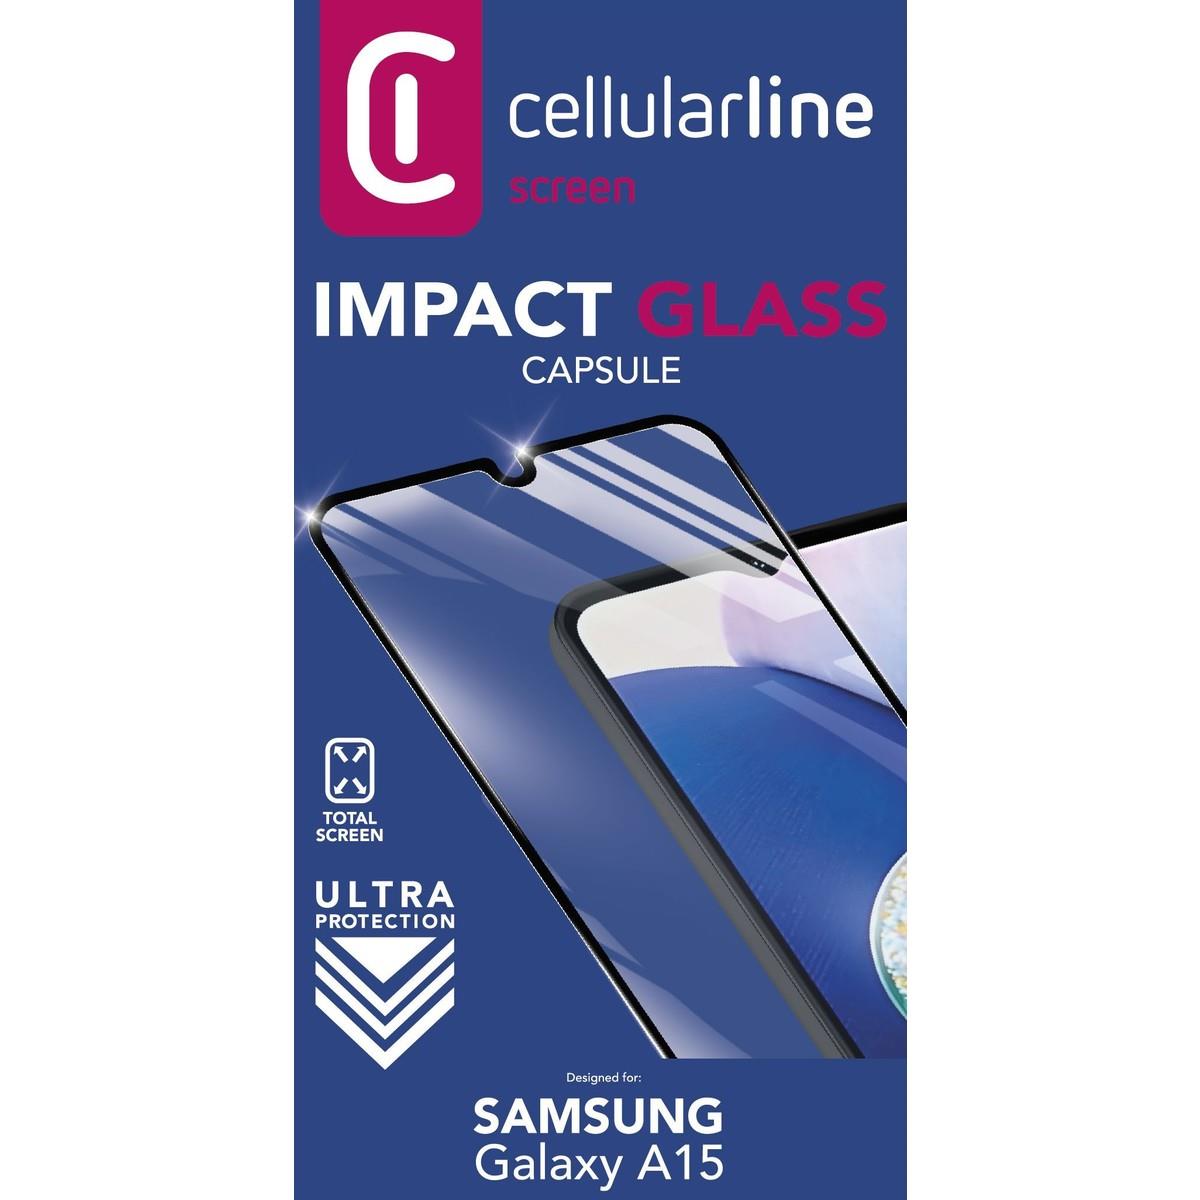 Schutzglas IMPACT GLASS CAPSULE für Samsung Galaxy A15 4G/5G